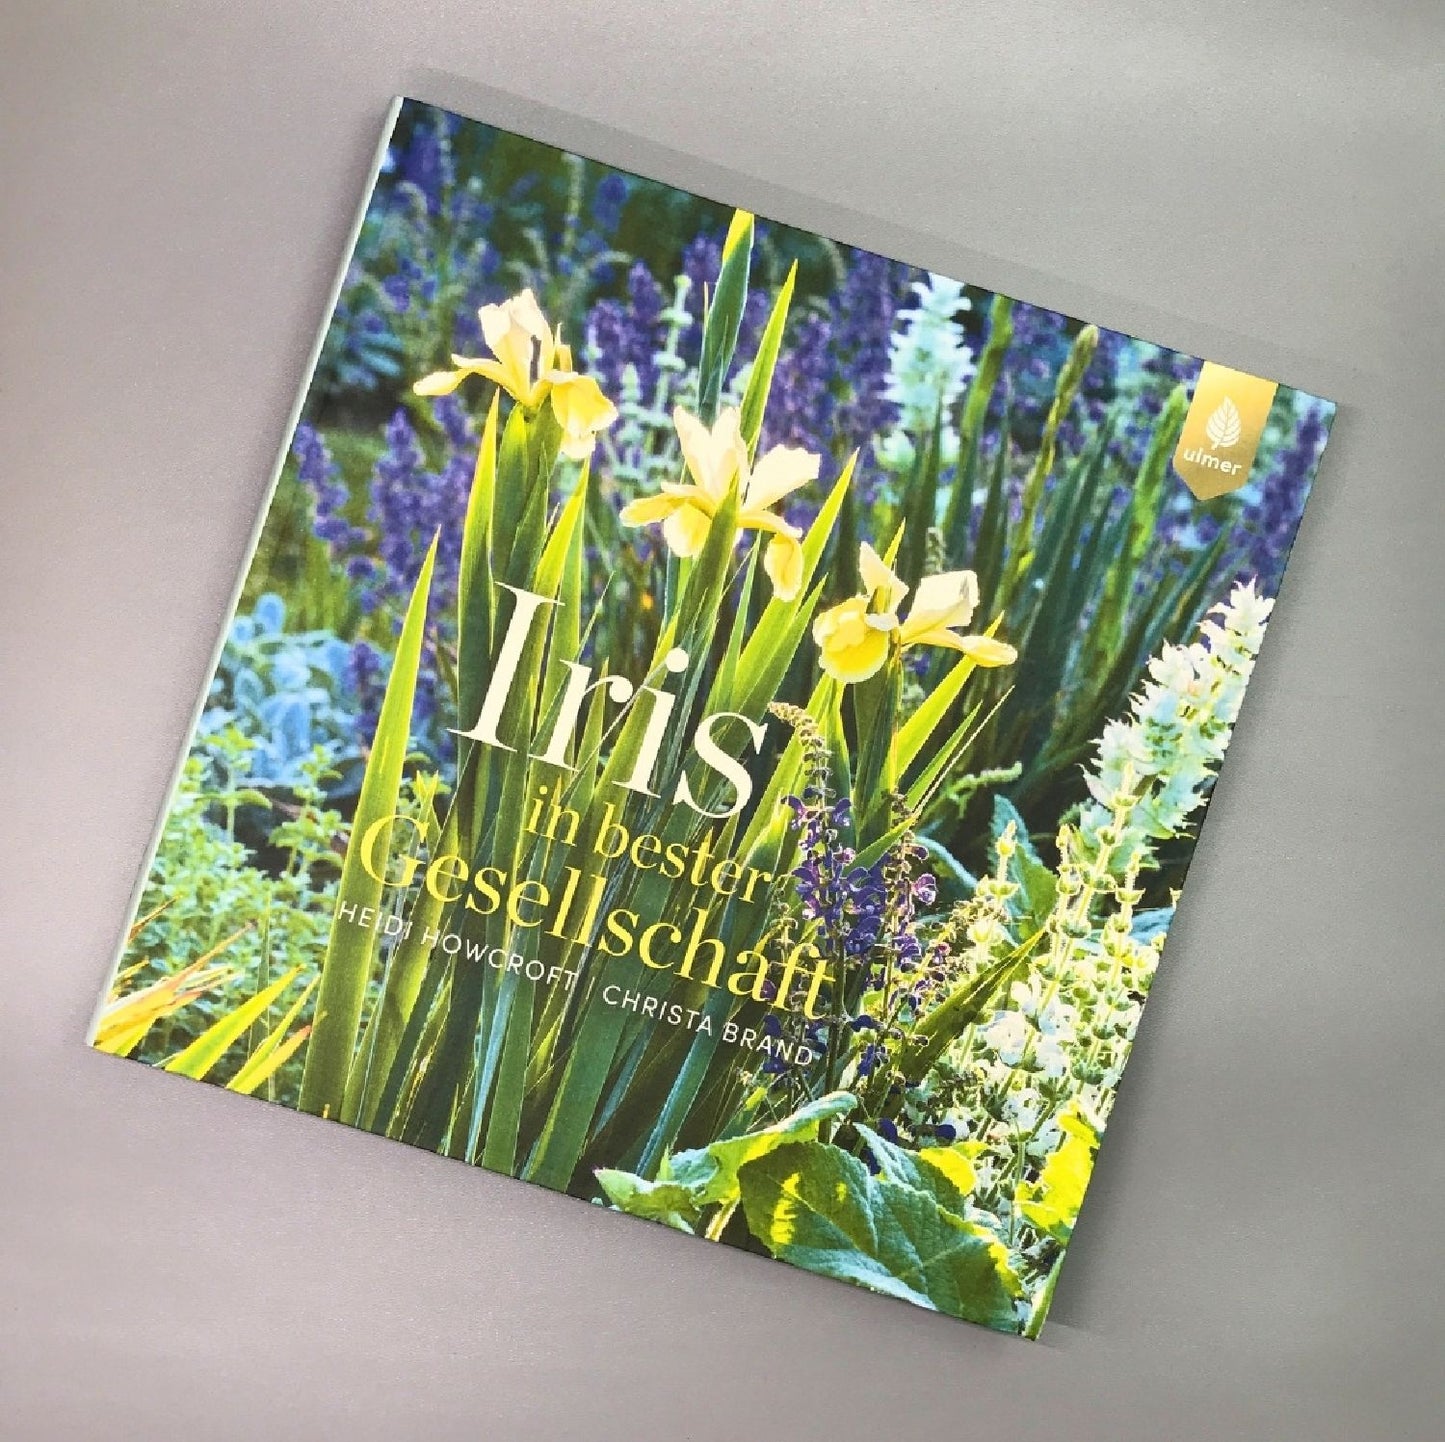 Iris in bester Gesellschaft (Heidi Howcroft & Christa Brand)